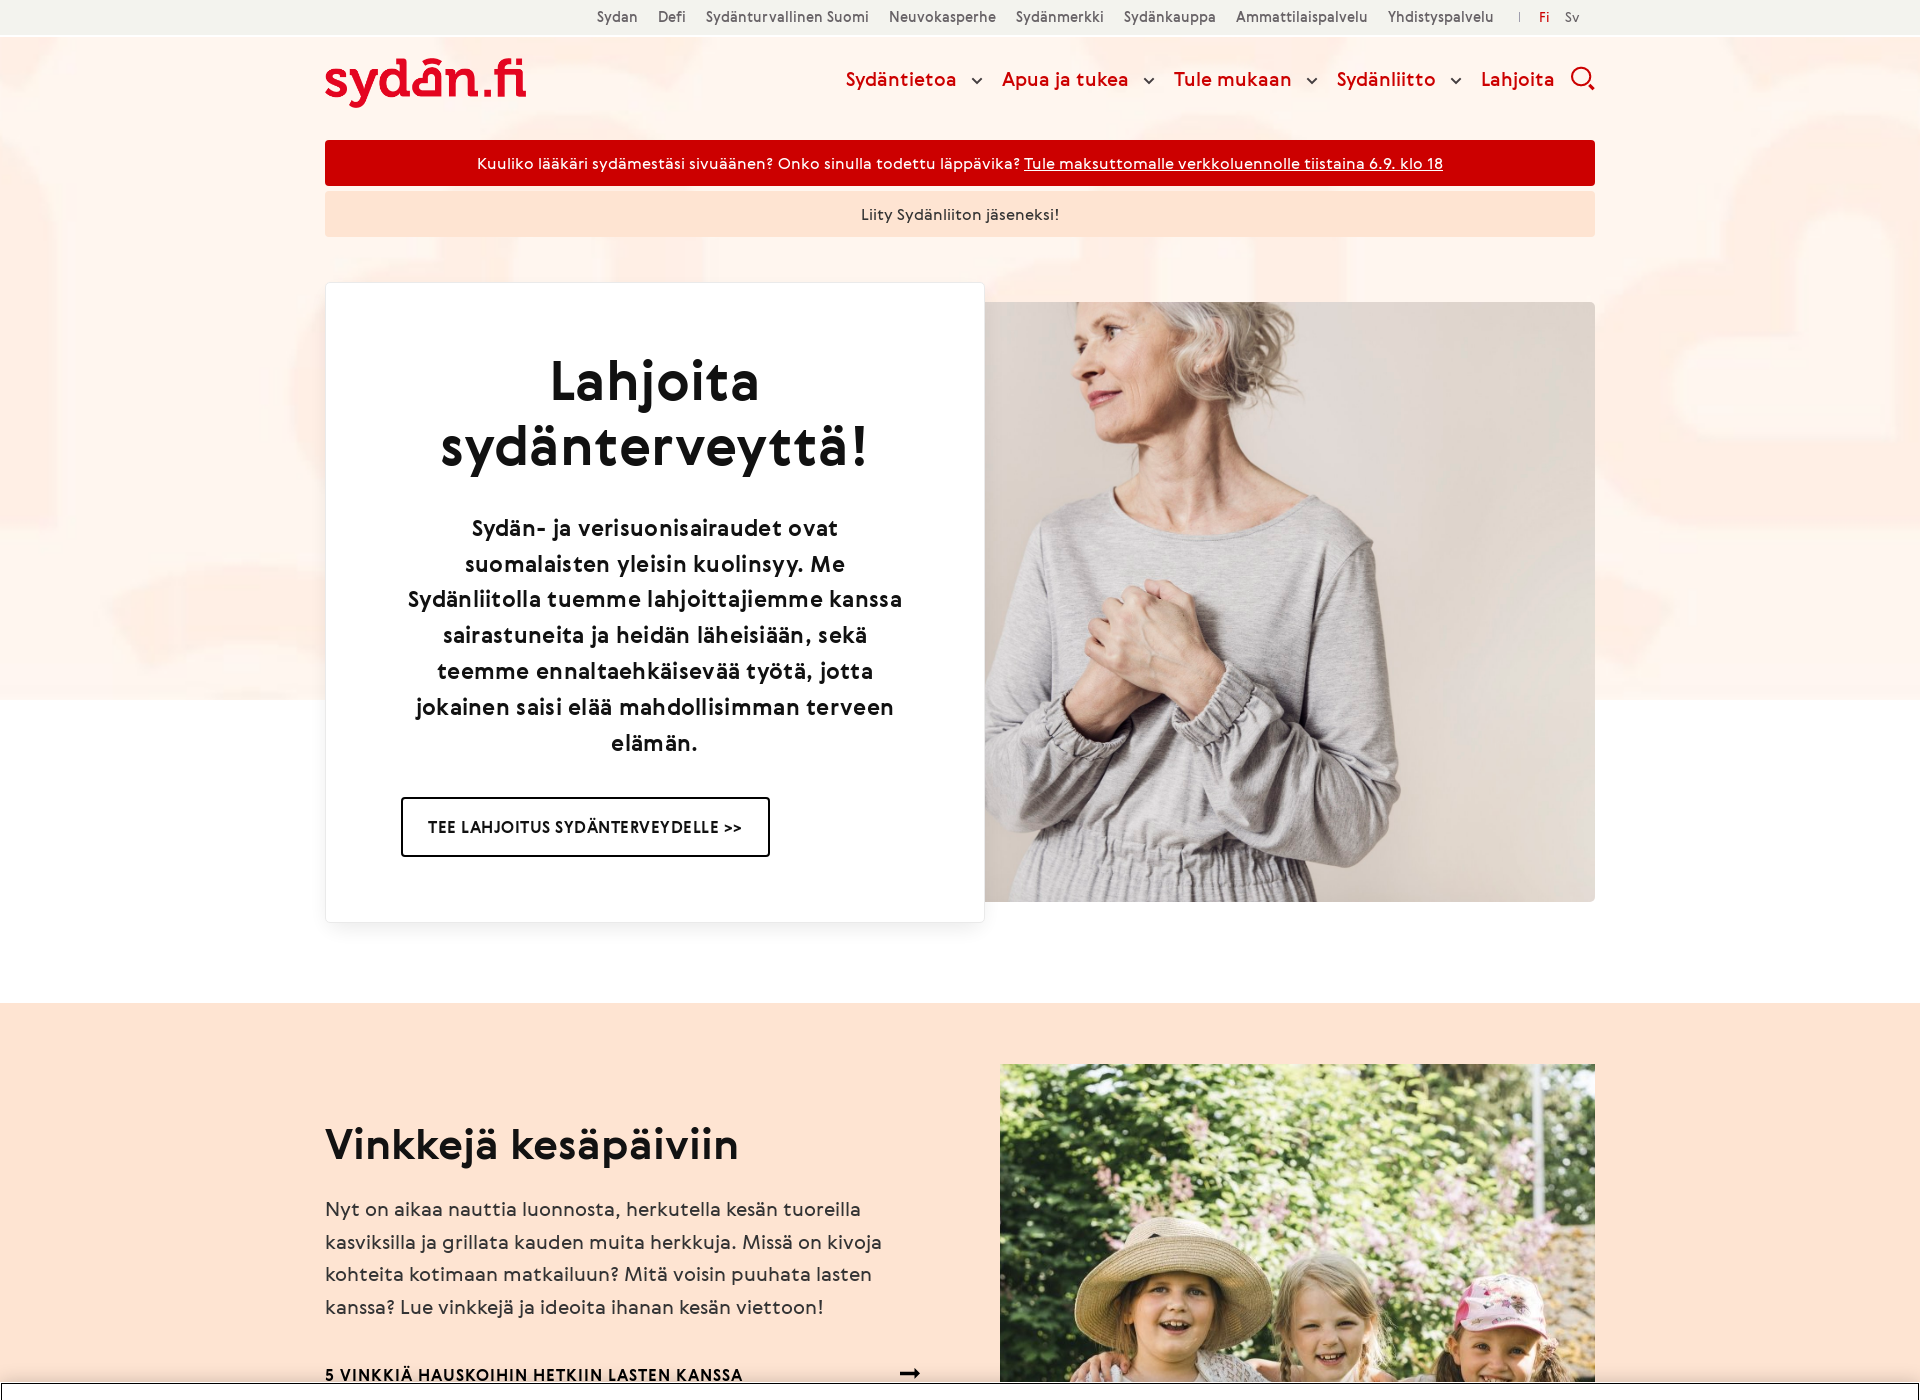 Näyttökuva sydän.fi